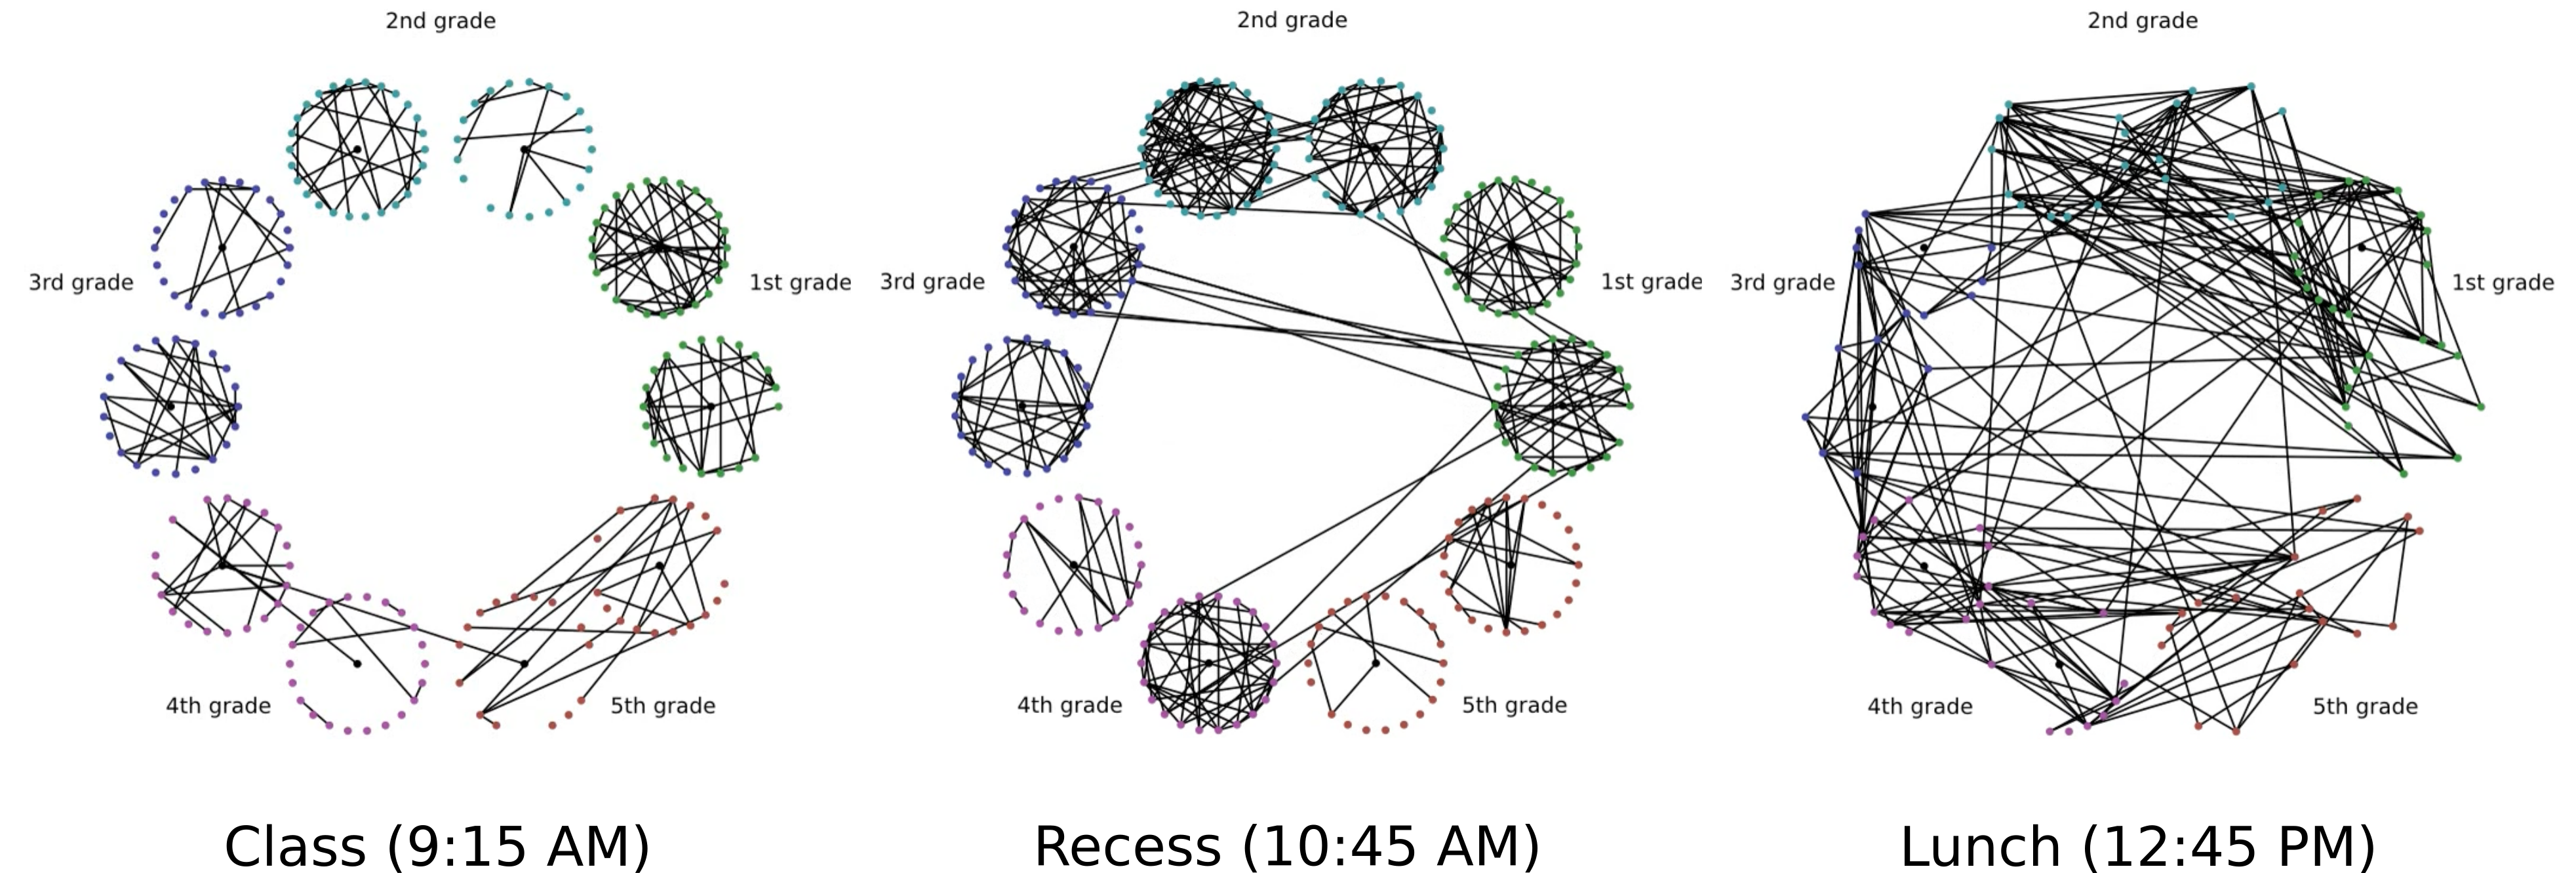 Primary School Graphs